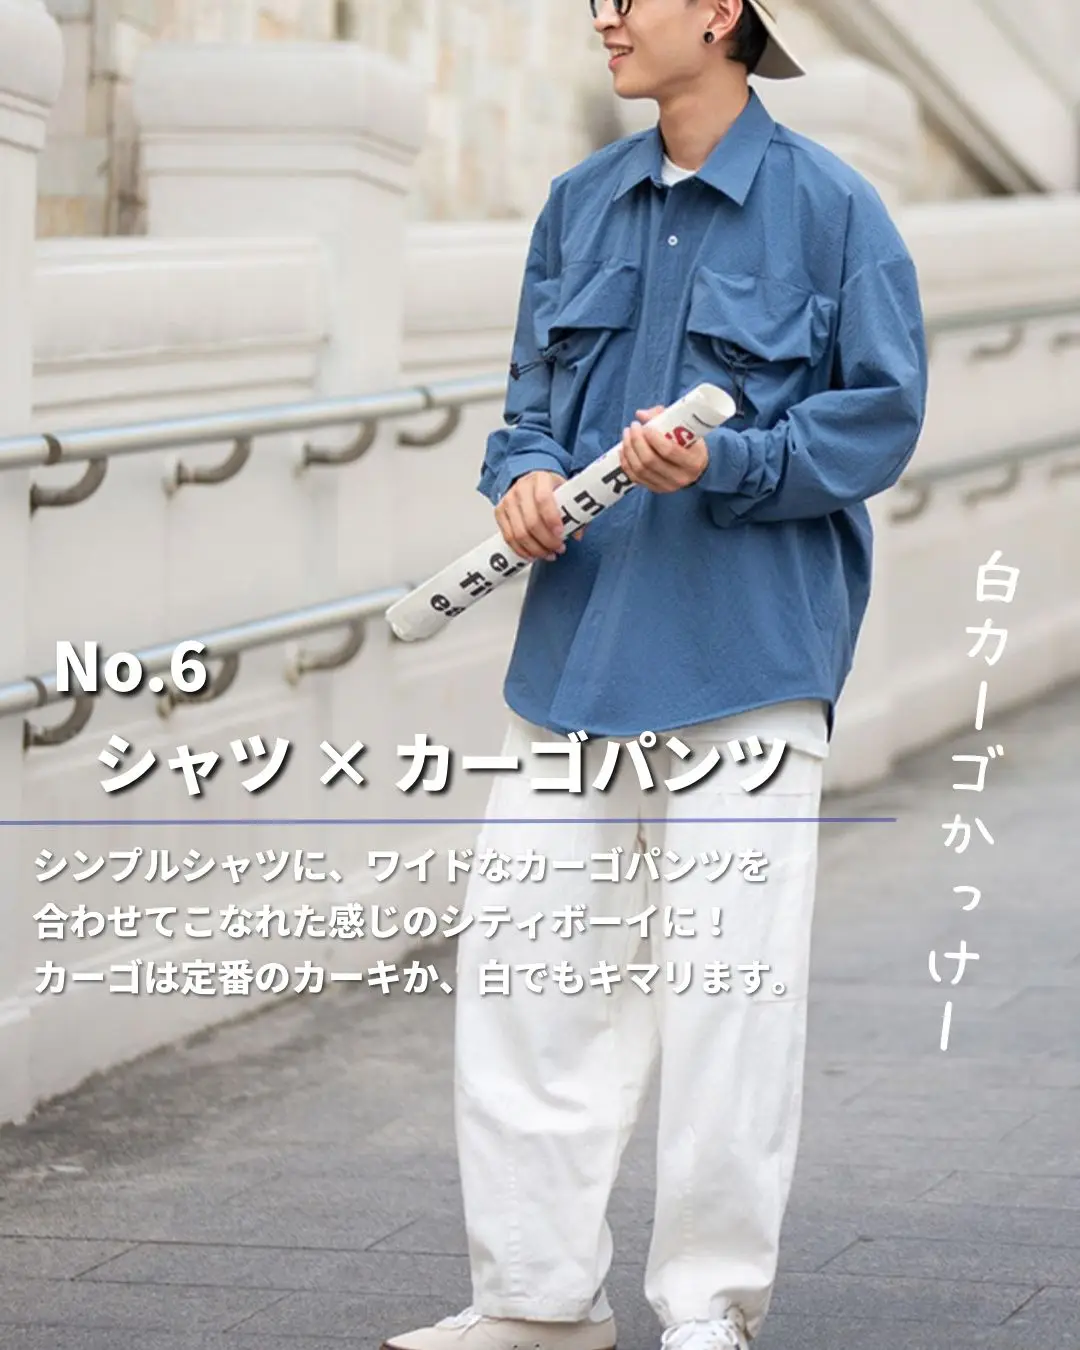 売れ筋ランキング c-boy style SET (No. 27)シティーボーイ